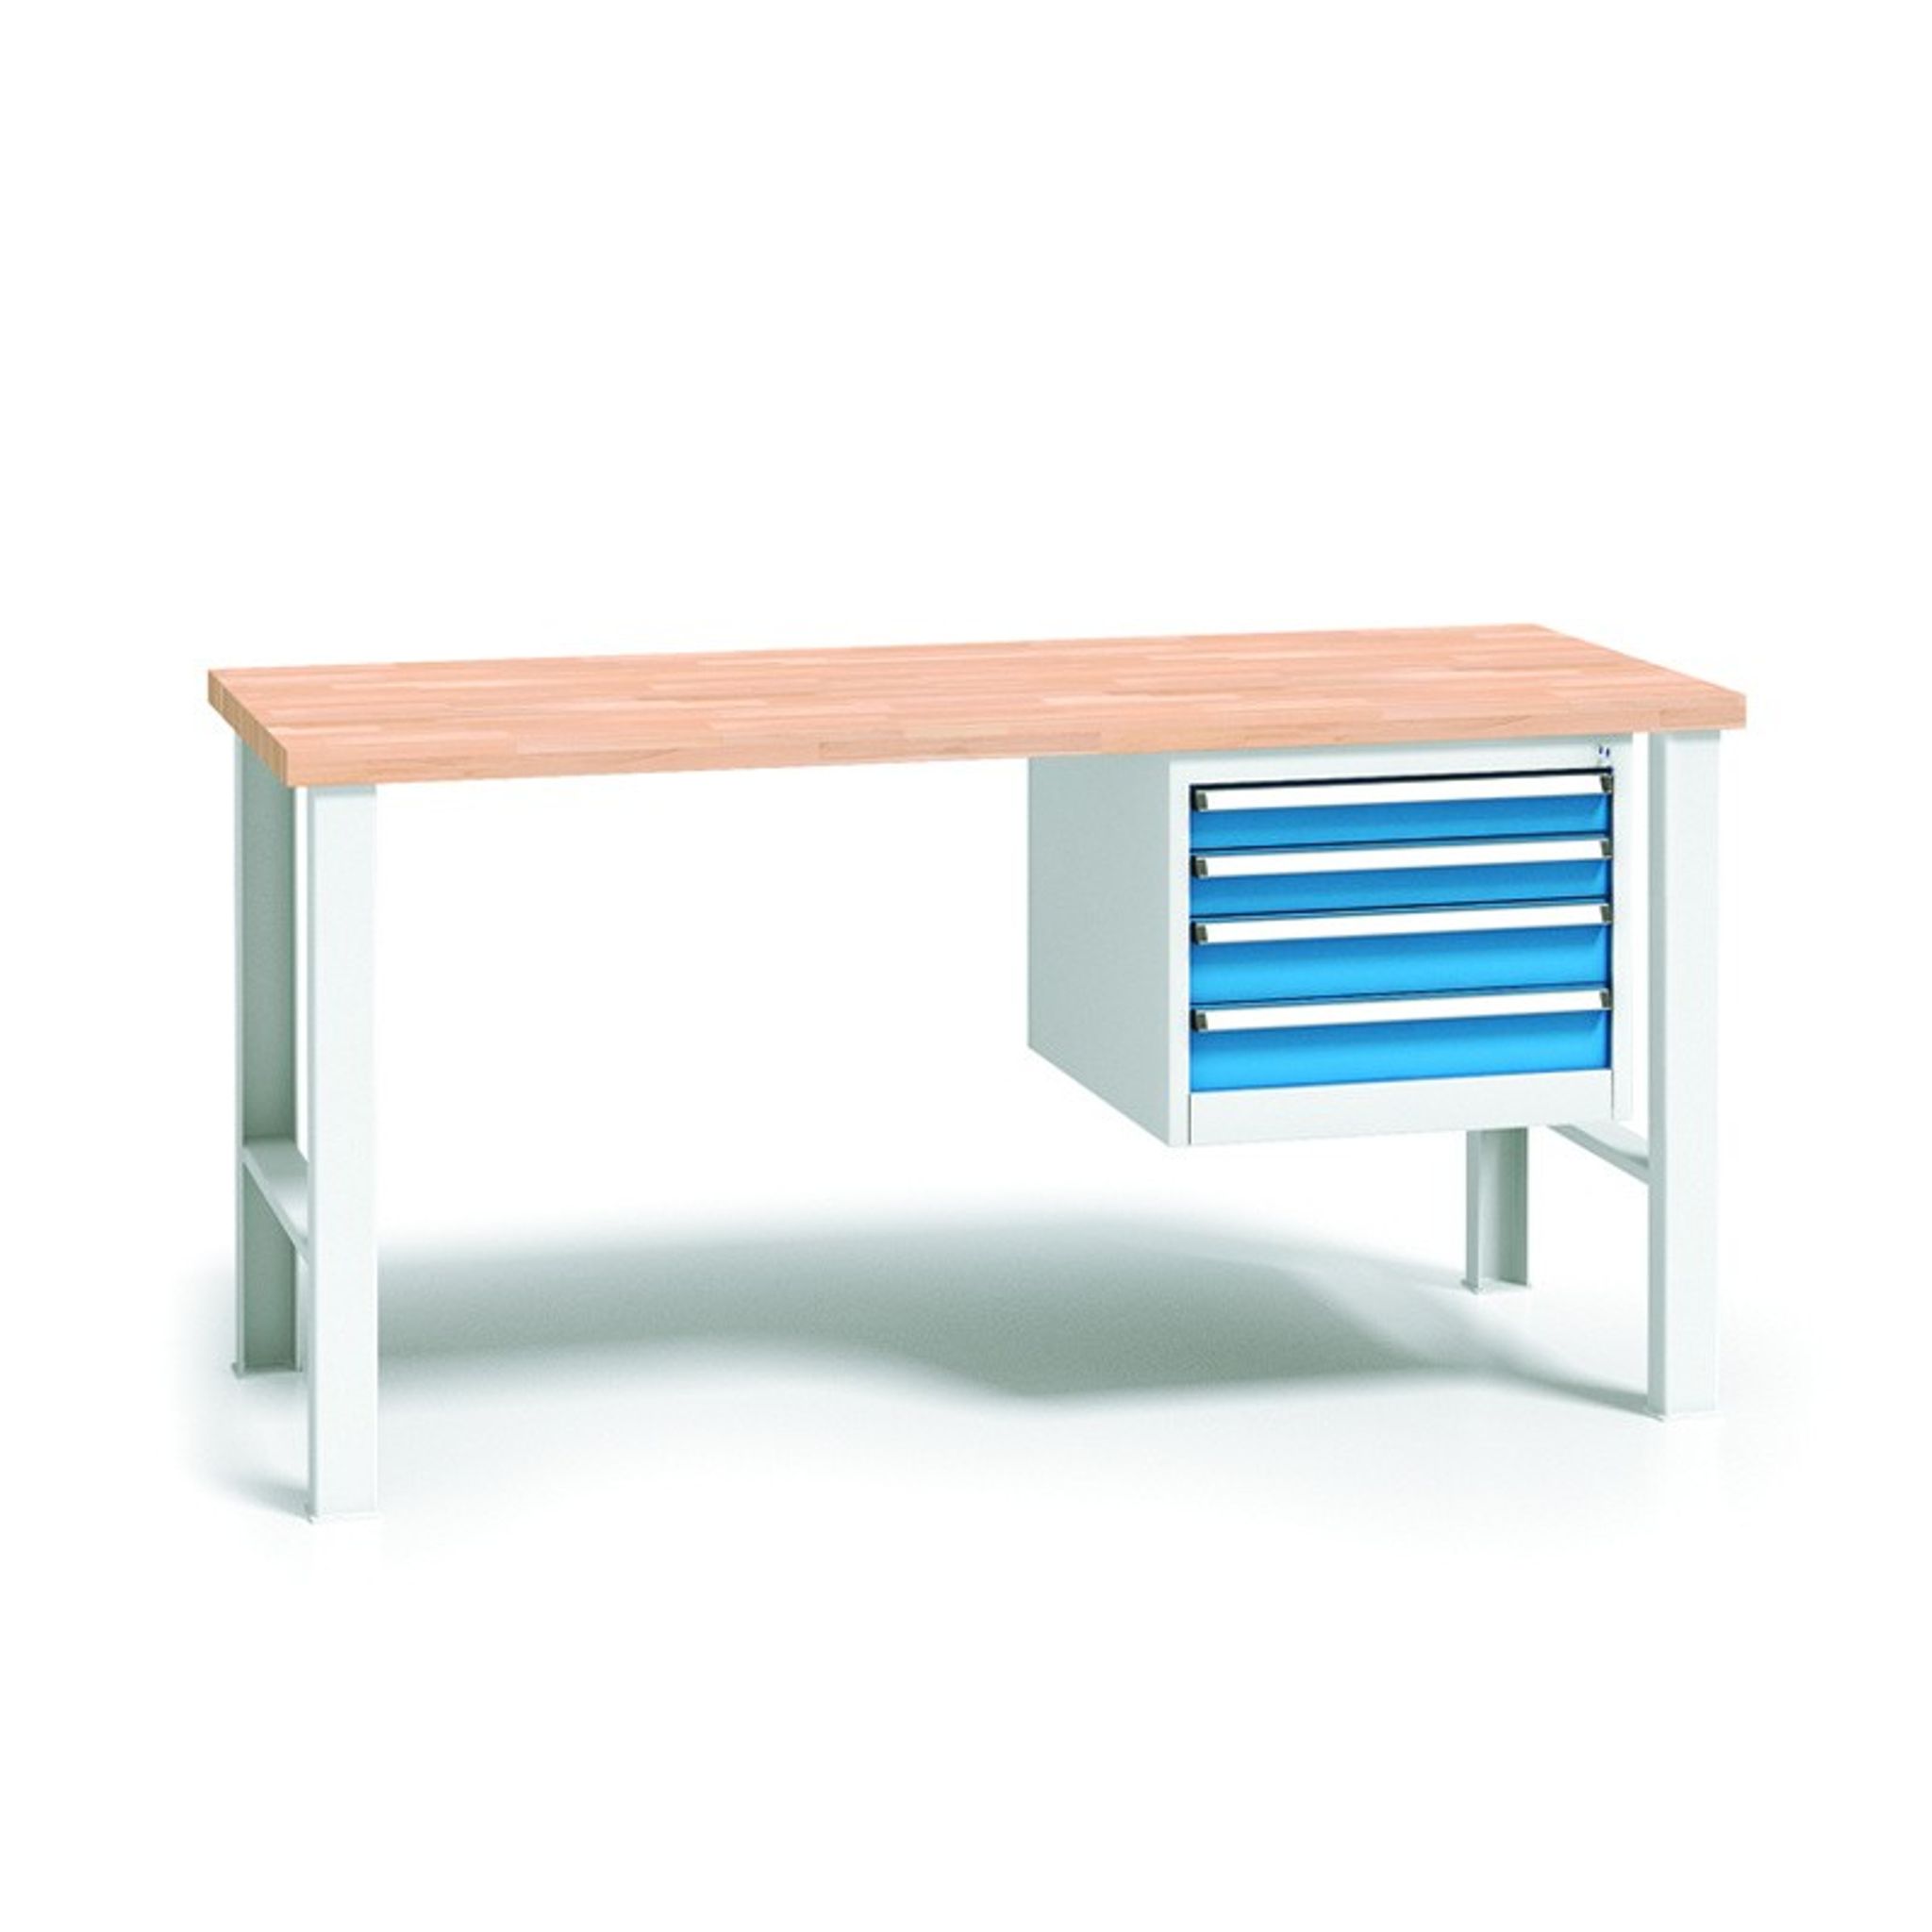 Profesjonalny stół warsztatowy z drewnianym blatem roboczym, 1500x685x840 mm, 1x 4 szufladowy kontener